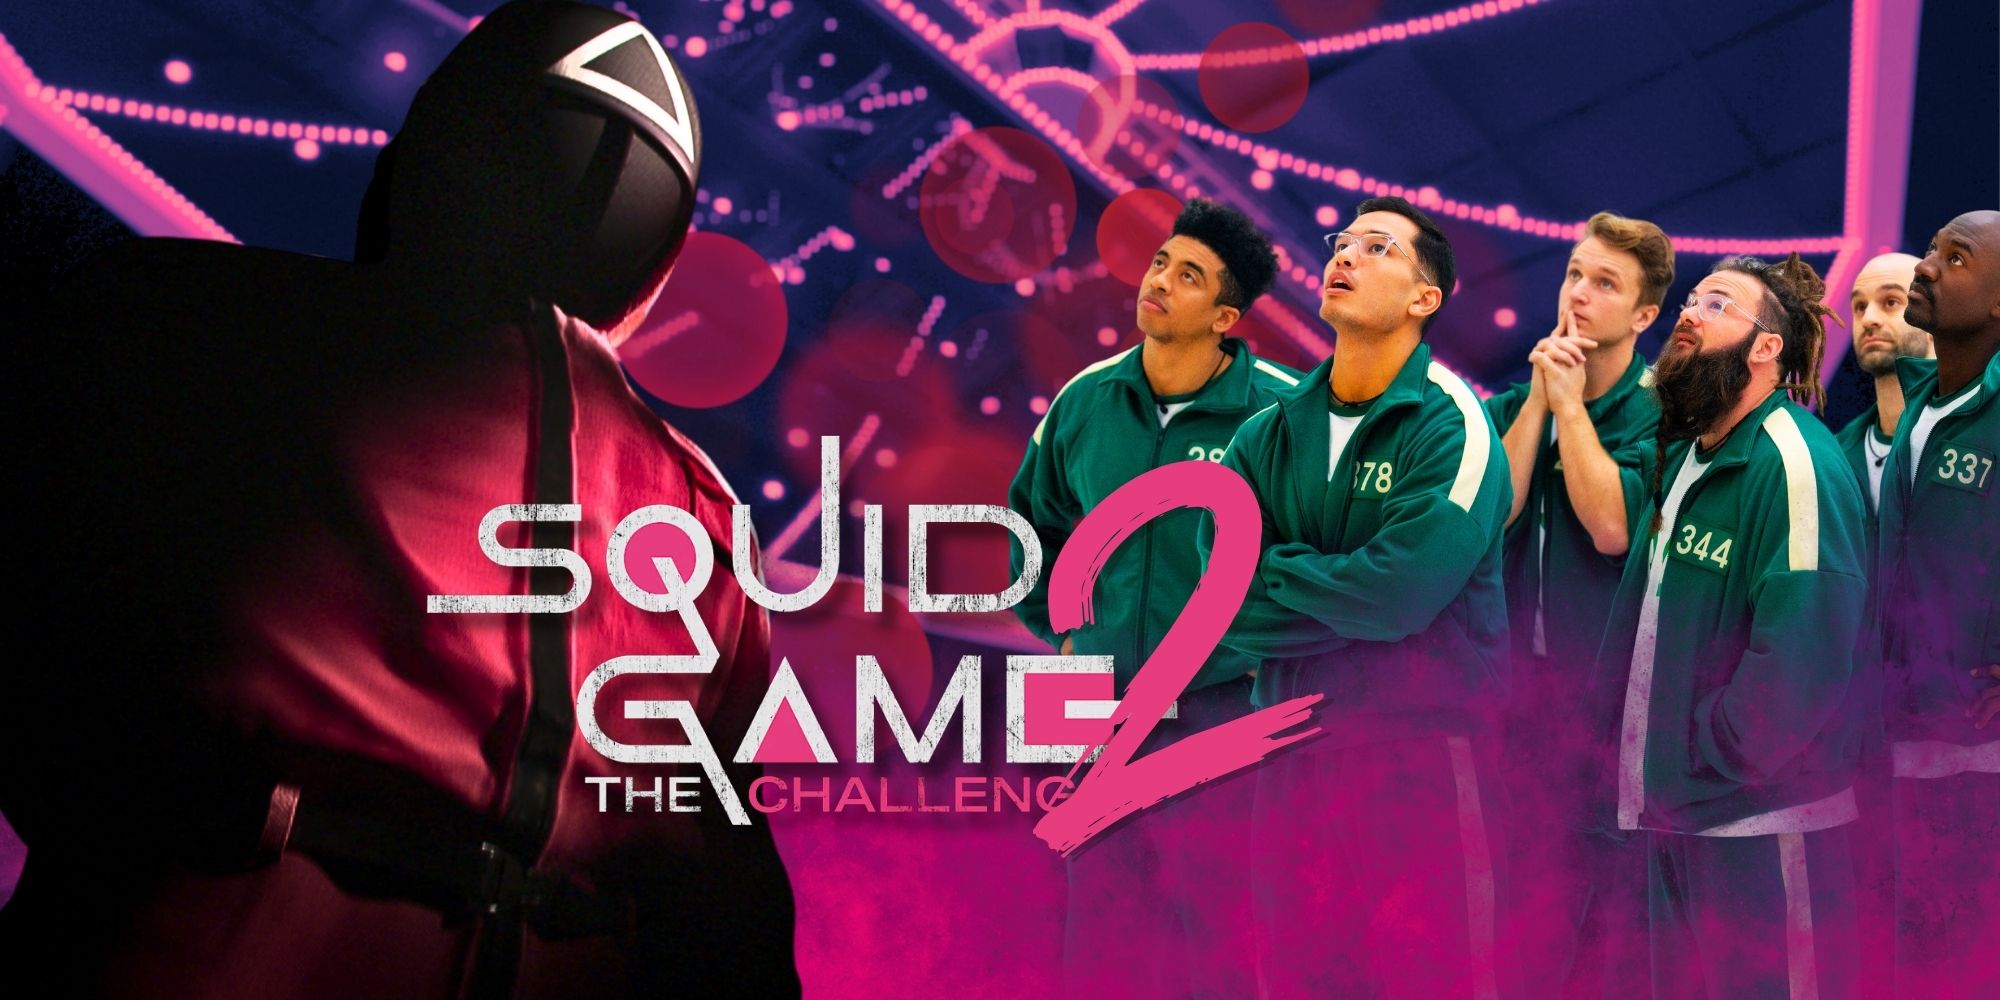 Squid Game: The Challenge Season 2 no debería suceder por esta razón